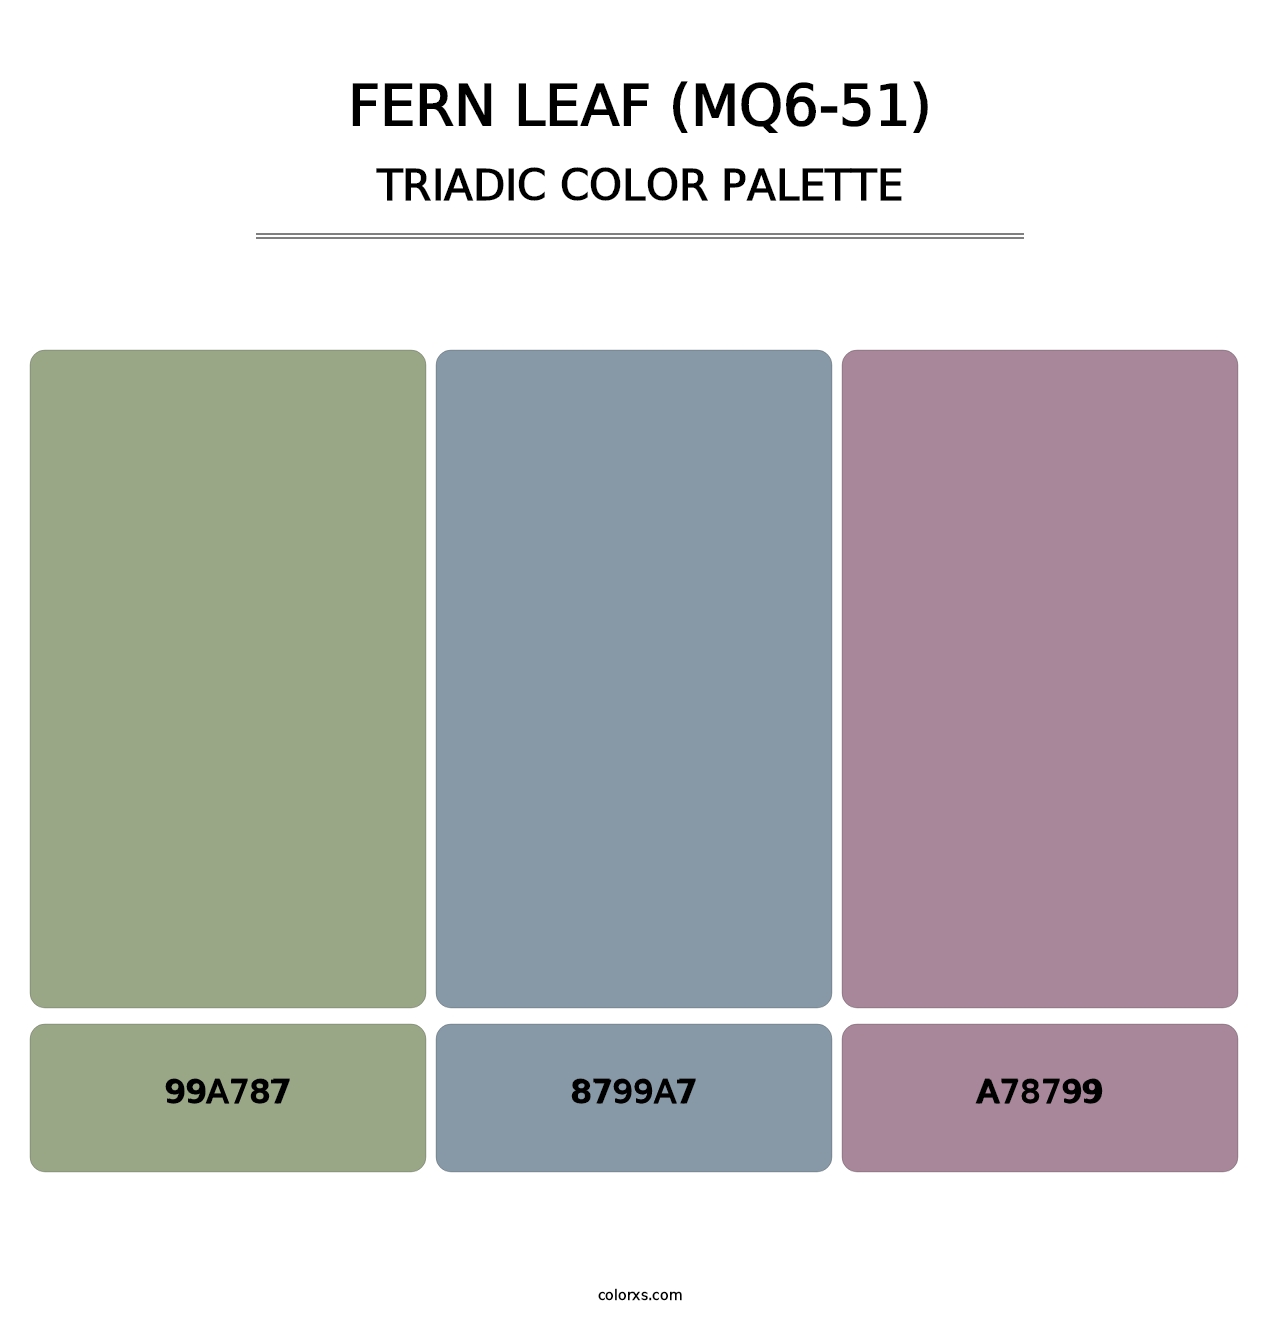 Fern Leaf (MQ6-51) - Triadic Color Palette